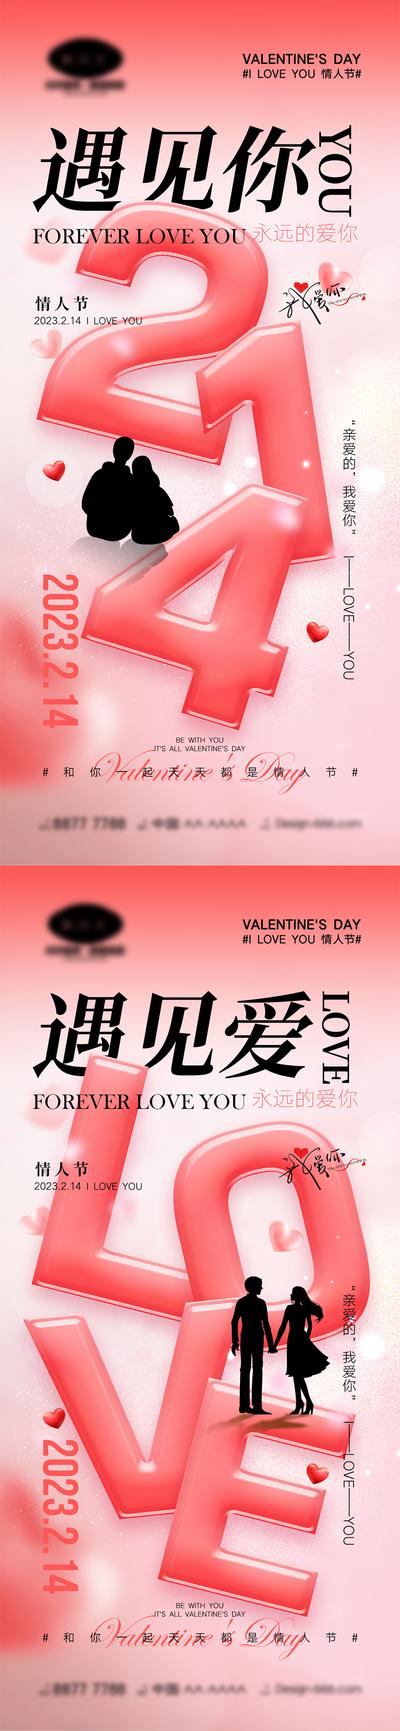 南门网 海报 活动 520 情人节 告白日 love 爱情 喜鹊 牛郎织女 七夕 爱心 气球